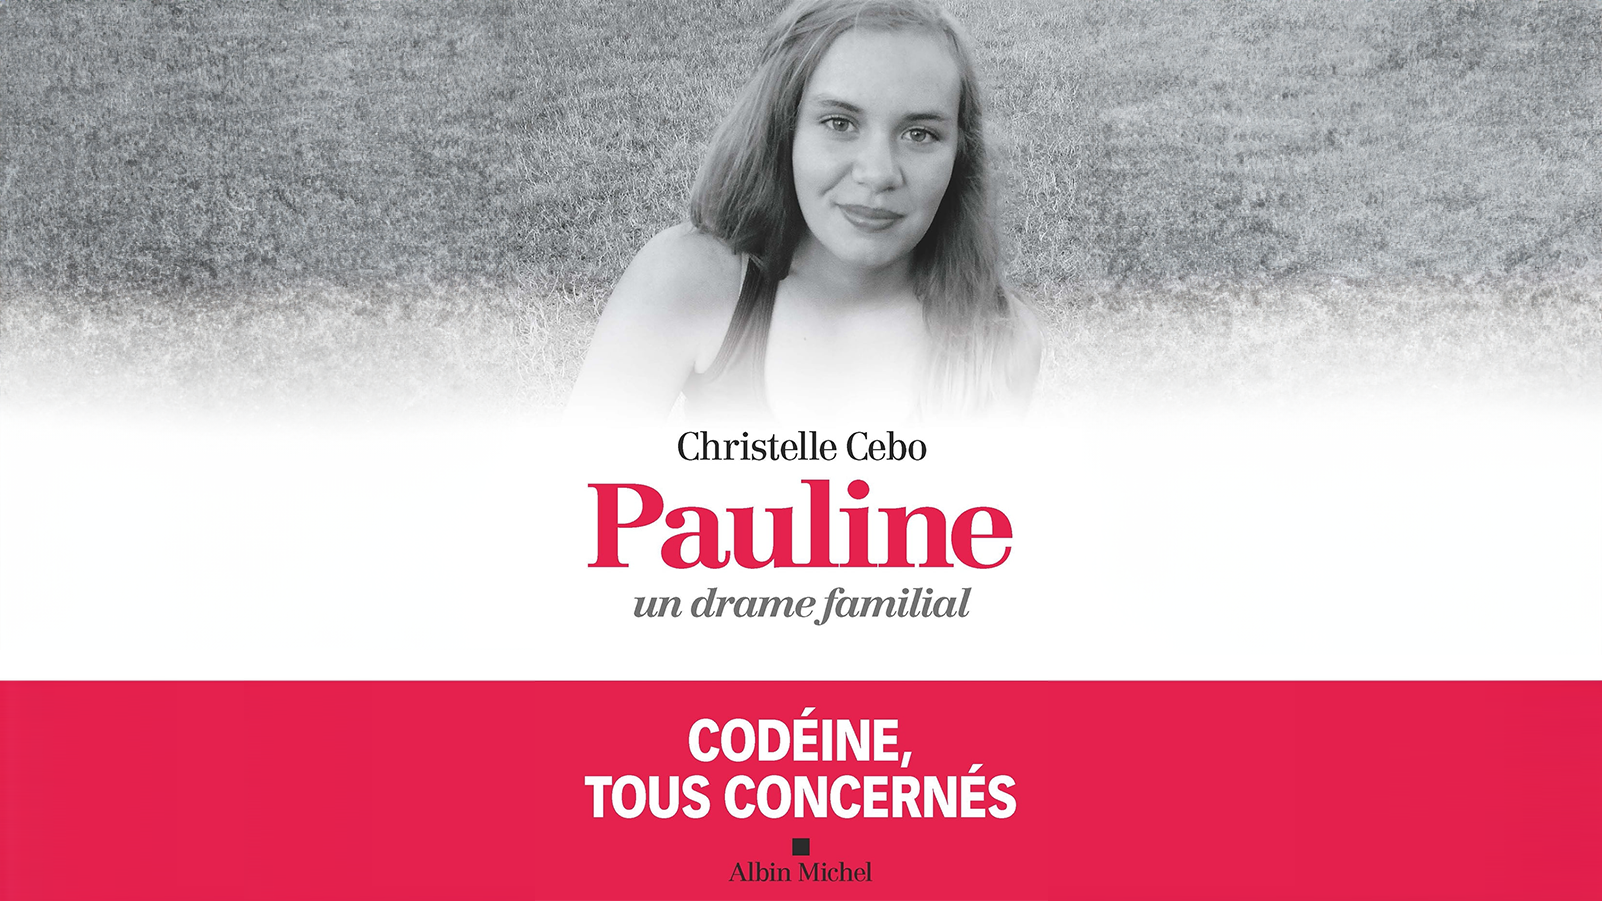 Couverture du livre « Pauline, un drame famililal » de Christelle CEBO + complétion IA générative Adobe.